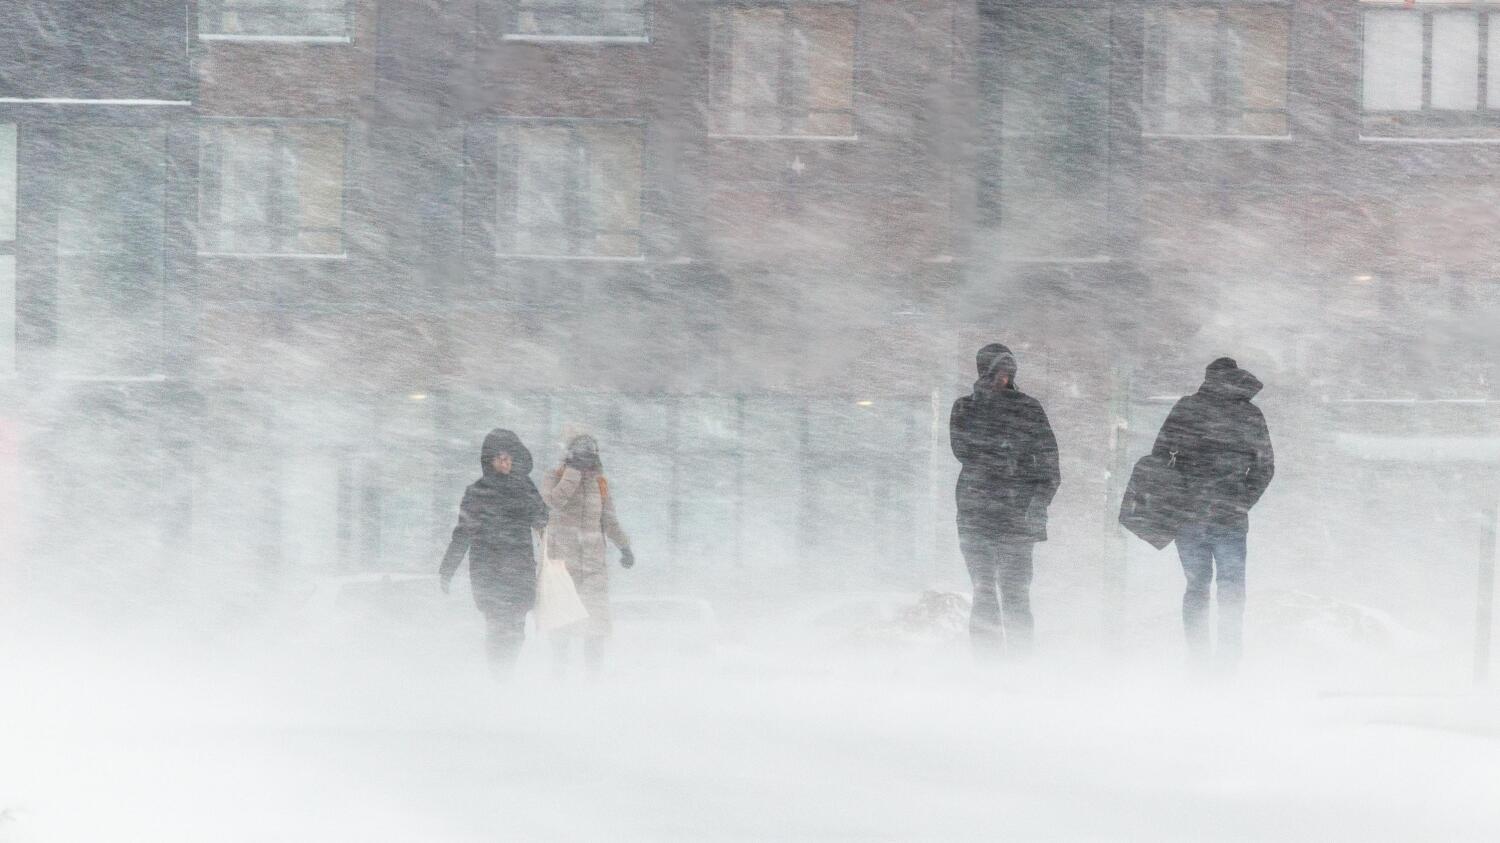 lumisade sai julkisen liikenteen sekaisin - hsl tiedottaa poikkeuksista reiteillä